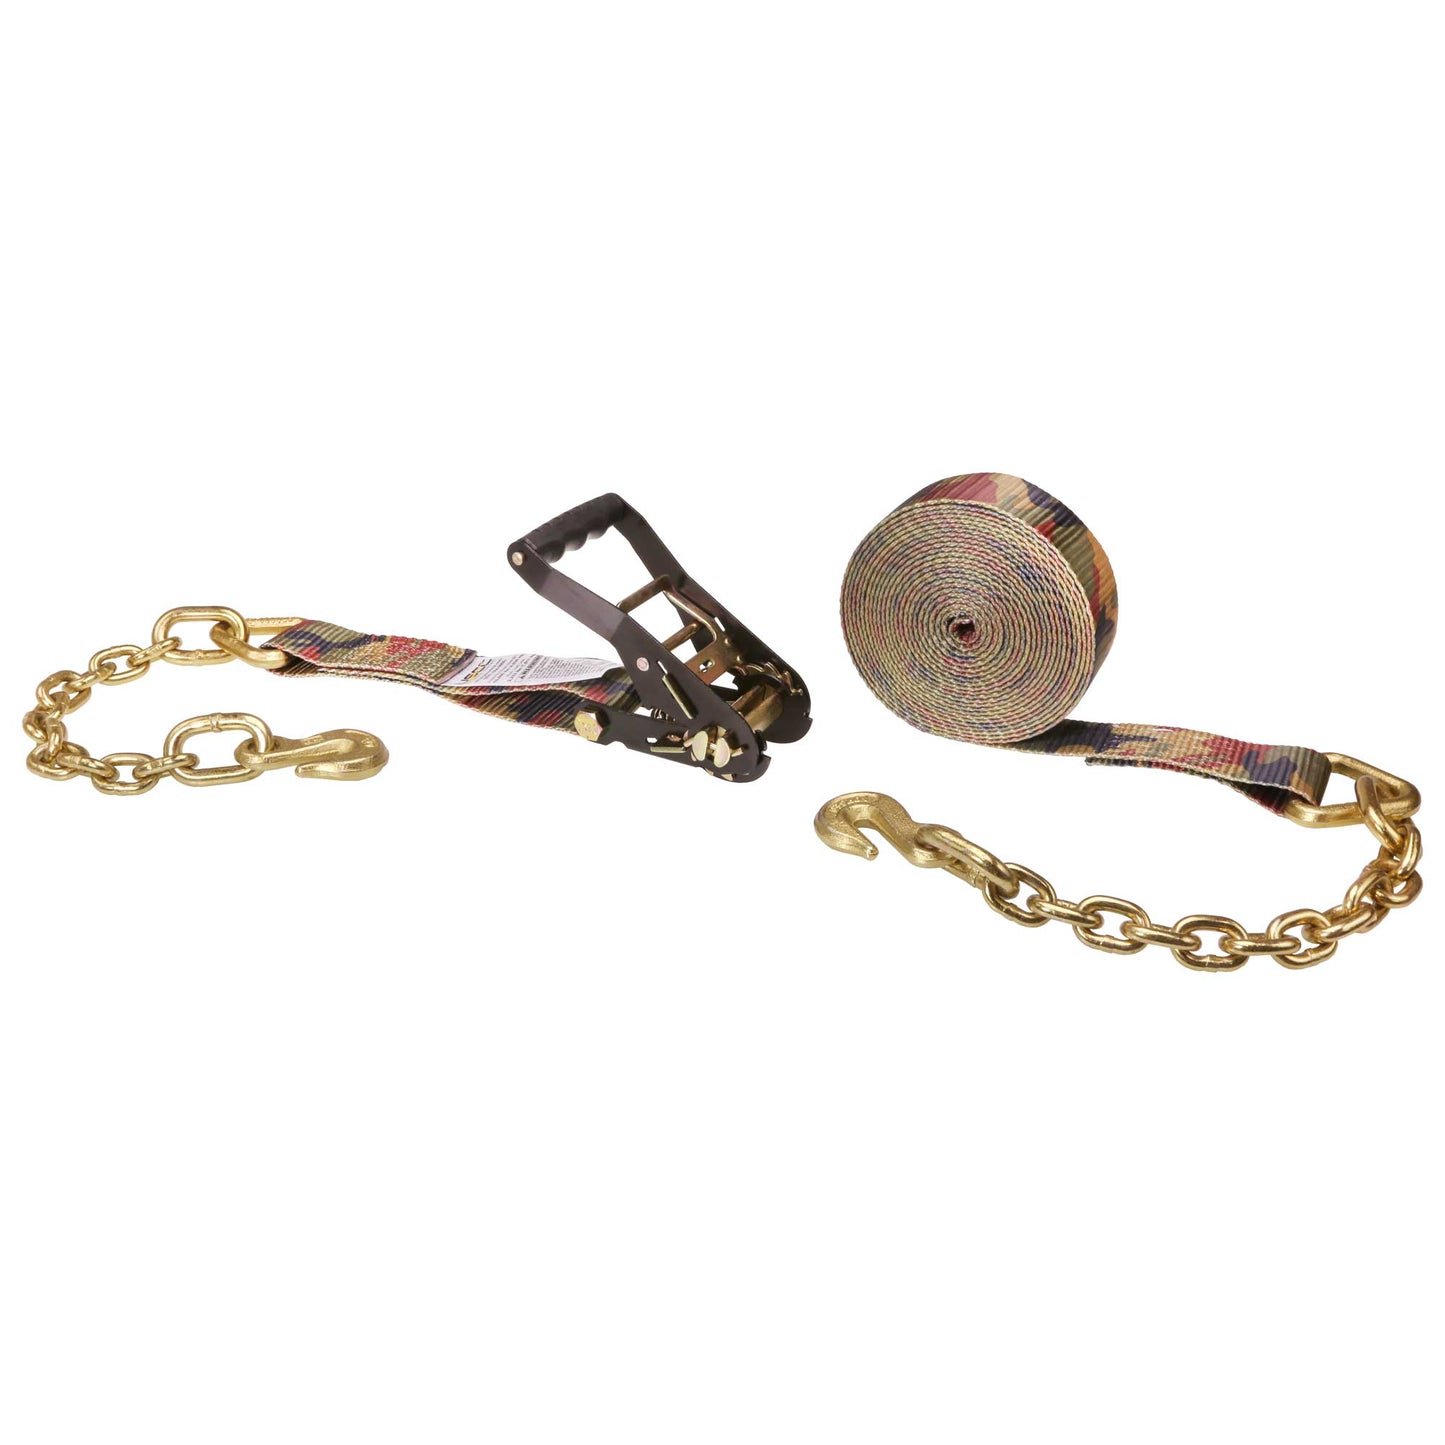 27' ratchet strap -  2" camo chain end ratchet strap